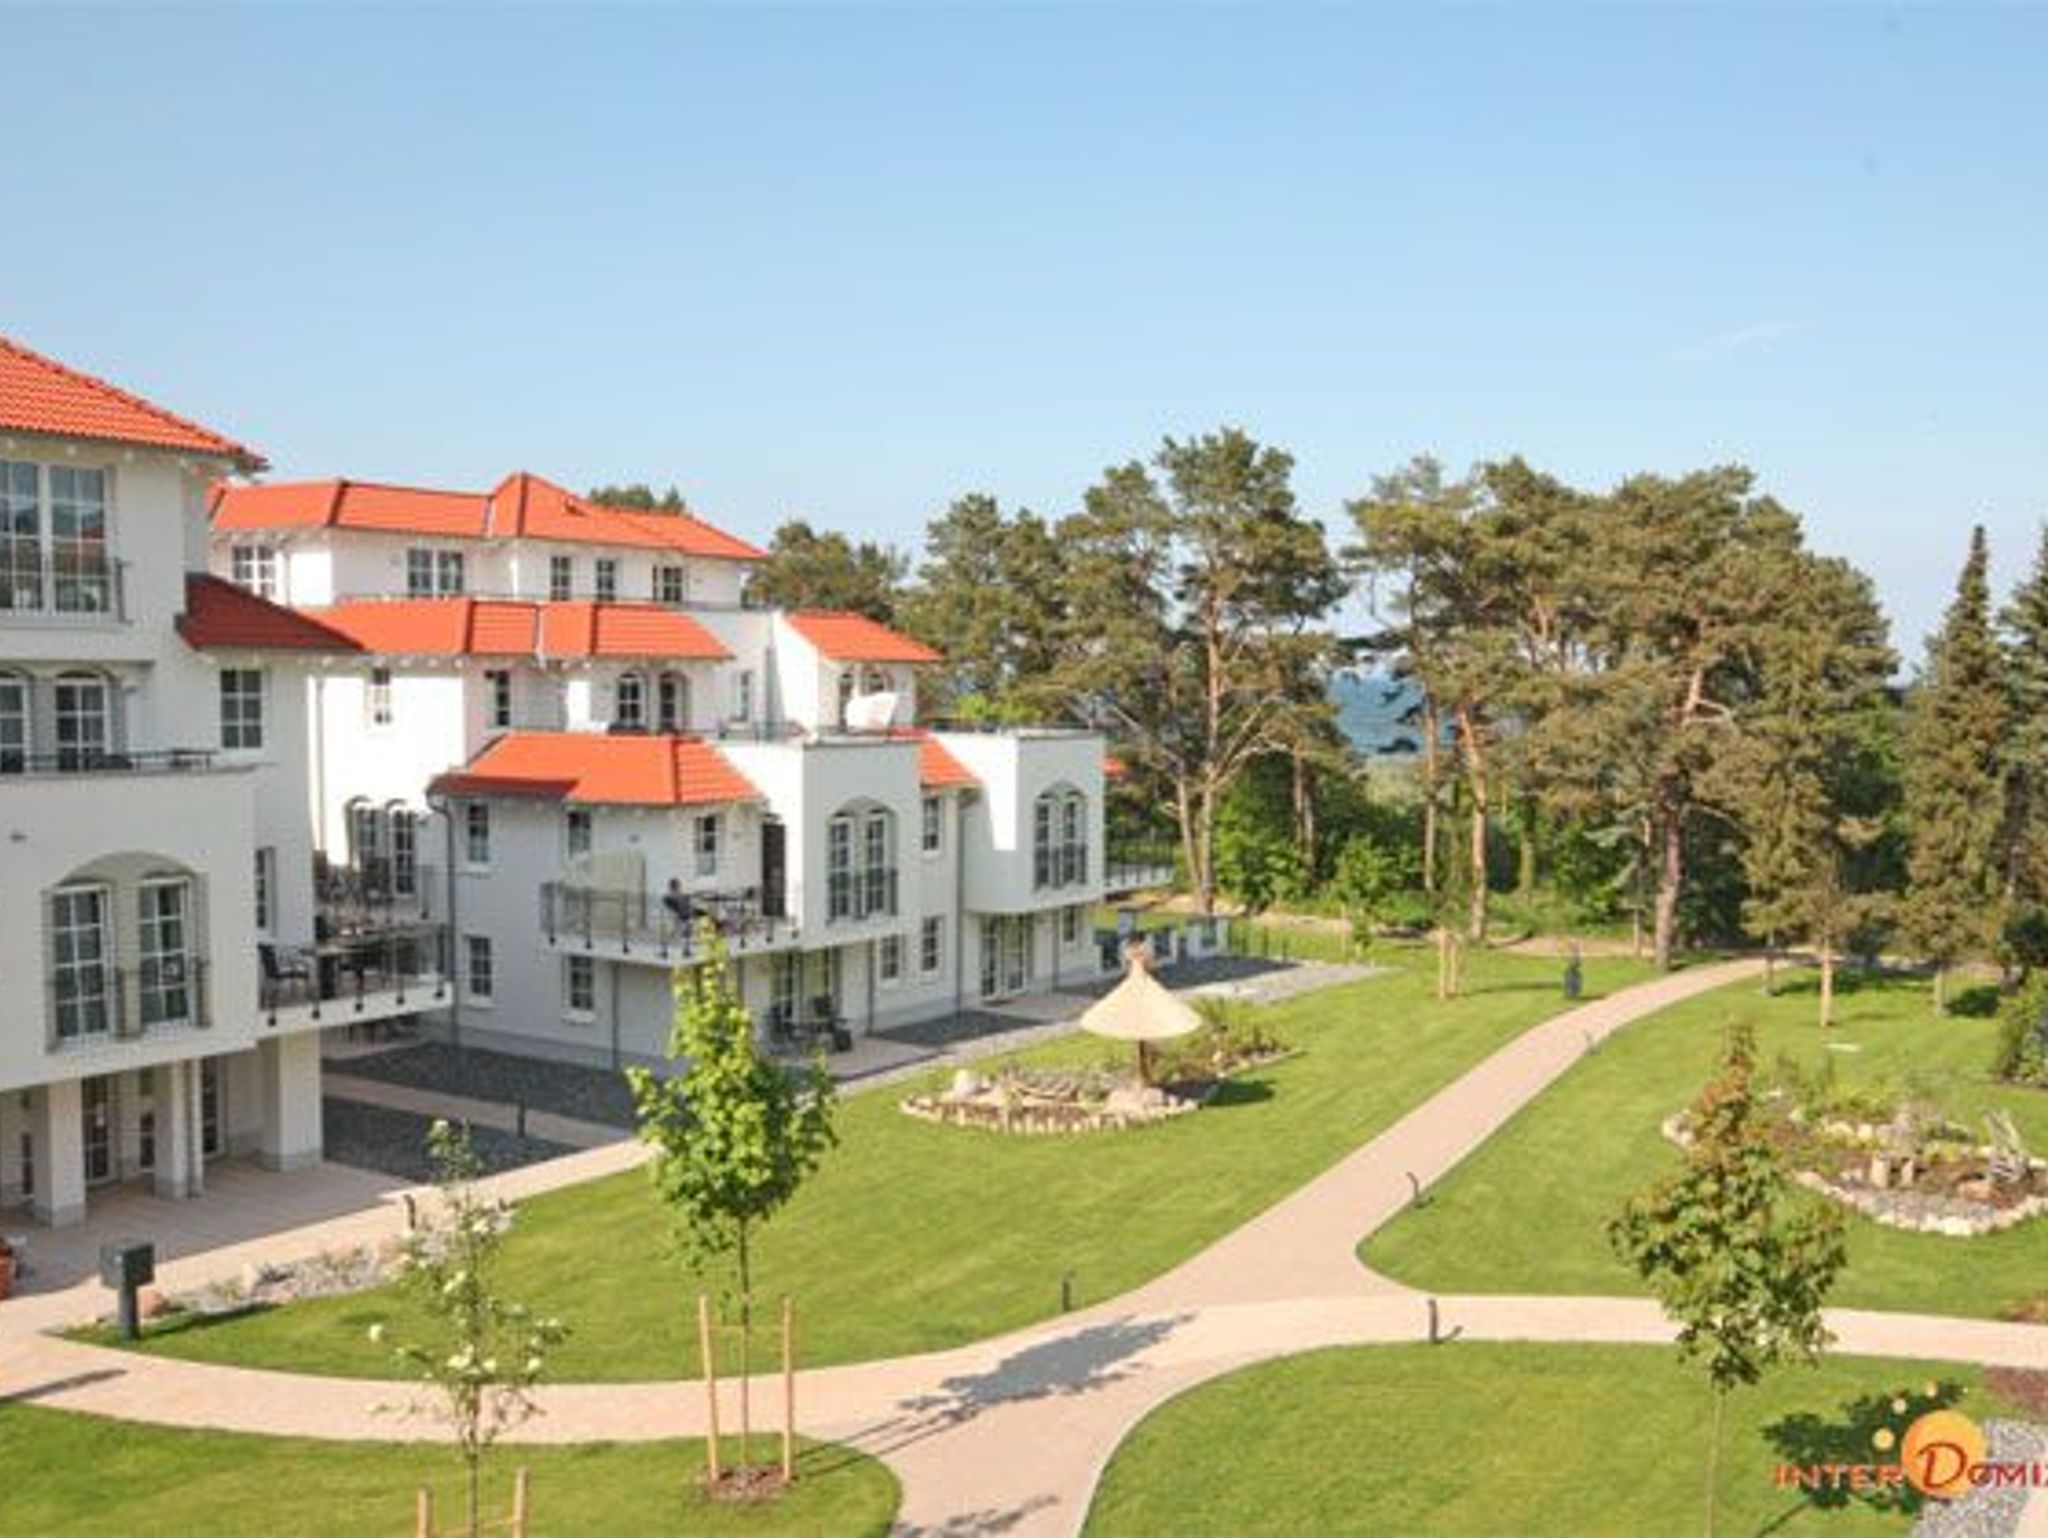 Private Anbieter Ferienhäuser Ostsee - Strand 50m - Wlan - buchen - Airbnb - FewoDirekt - 2 Schlafzimmer - Sandstrand in Rerik